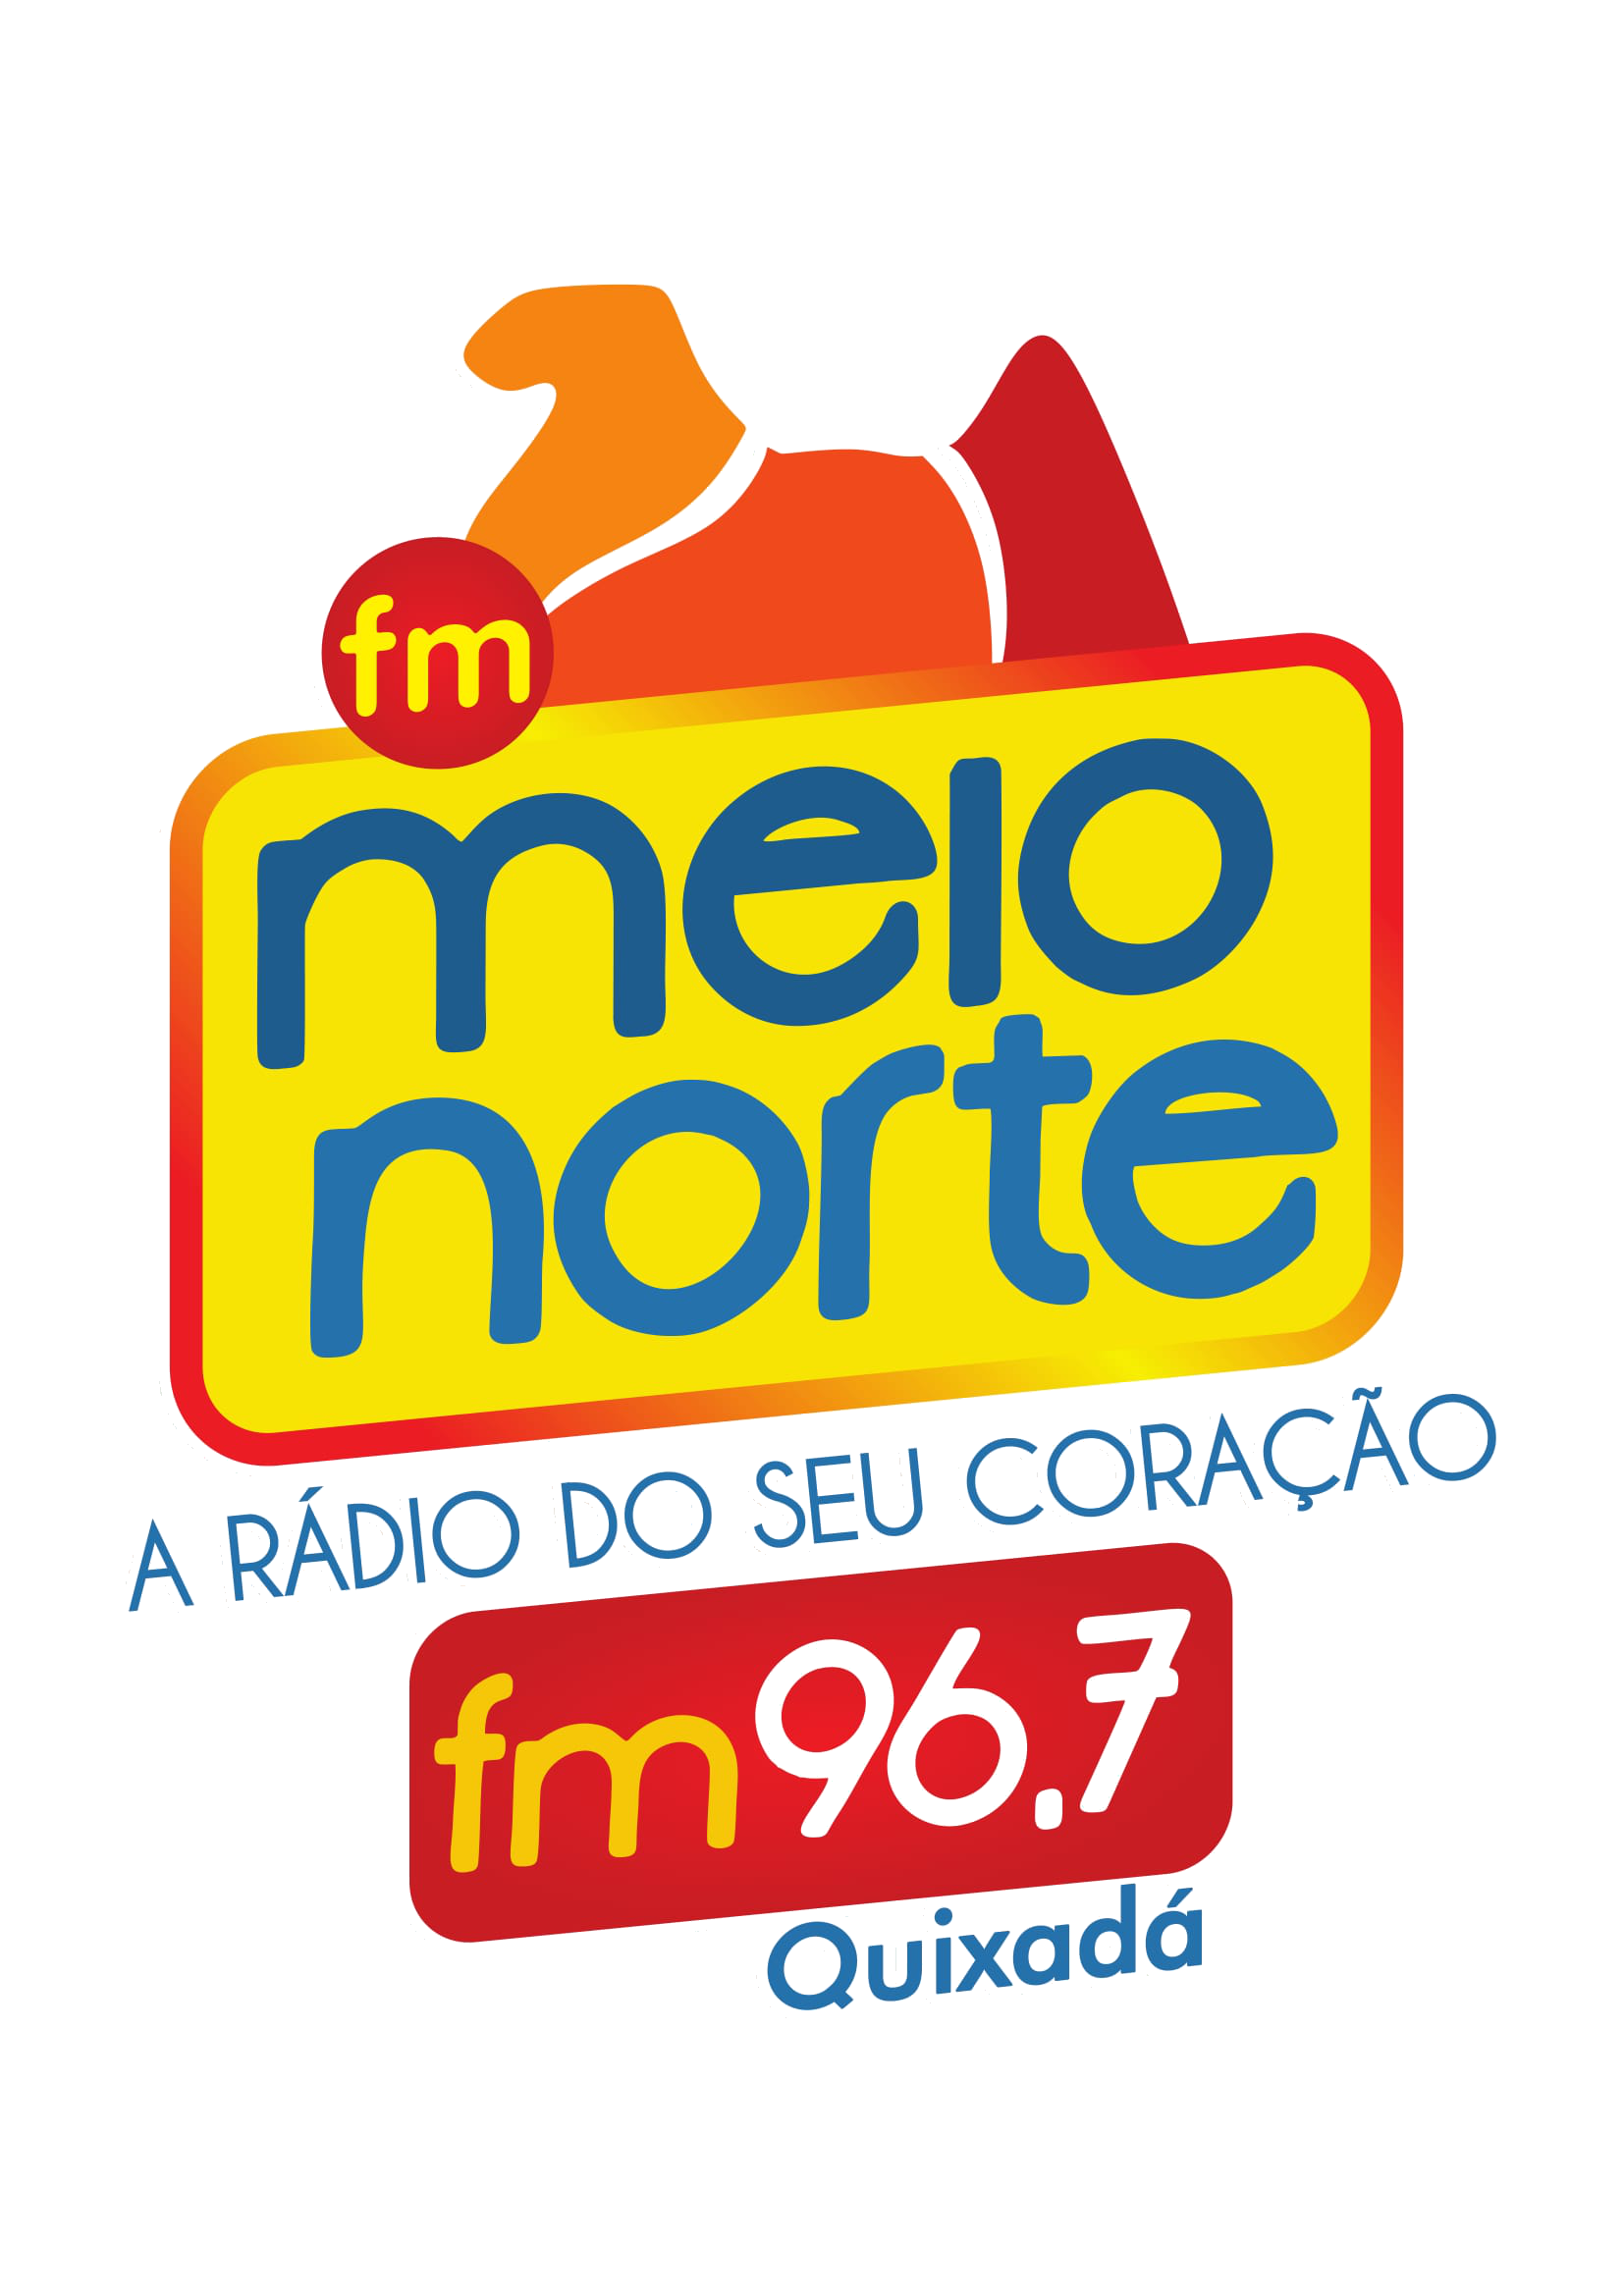 FM MEIO NORTE